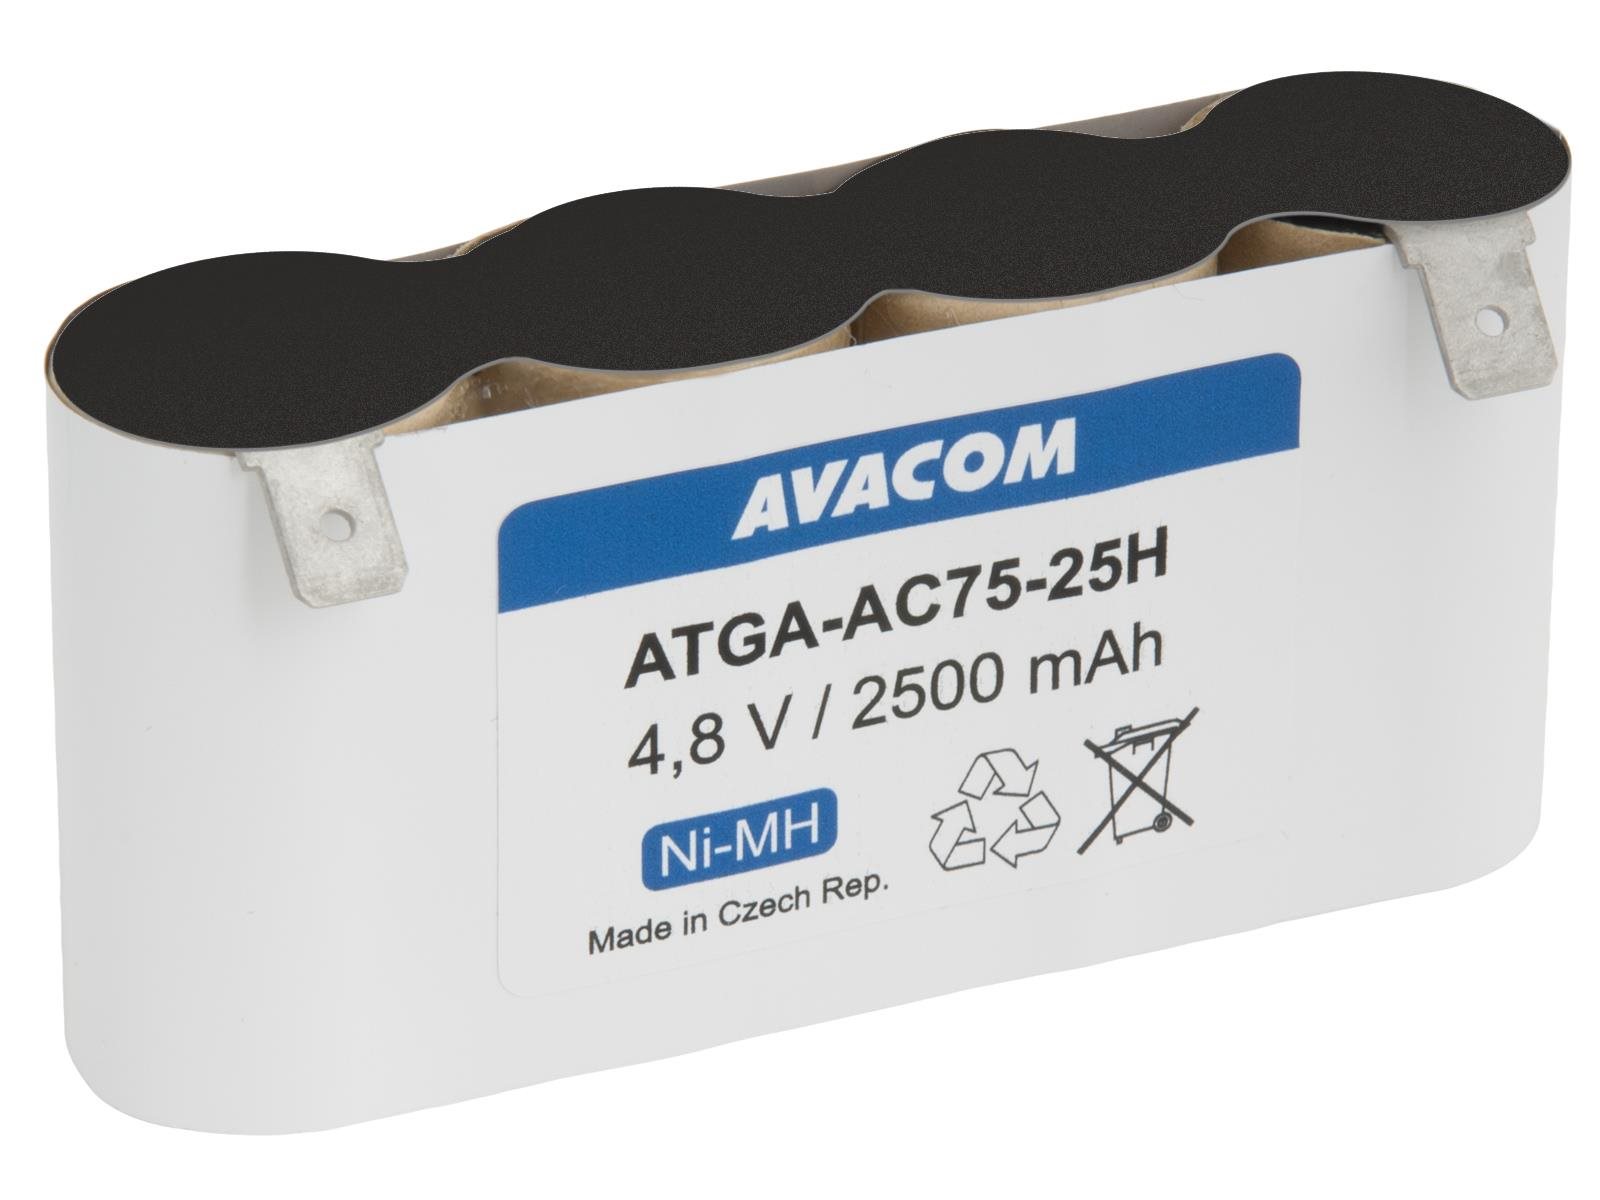 Akkumulátor akkus szerszámokhoz Avacom akkumulátor Gardena szerszámokhoz